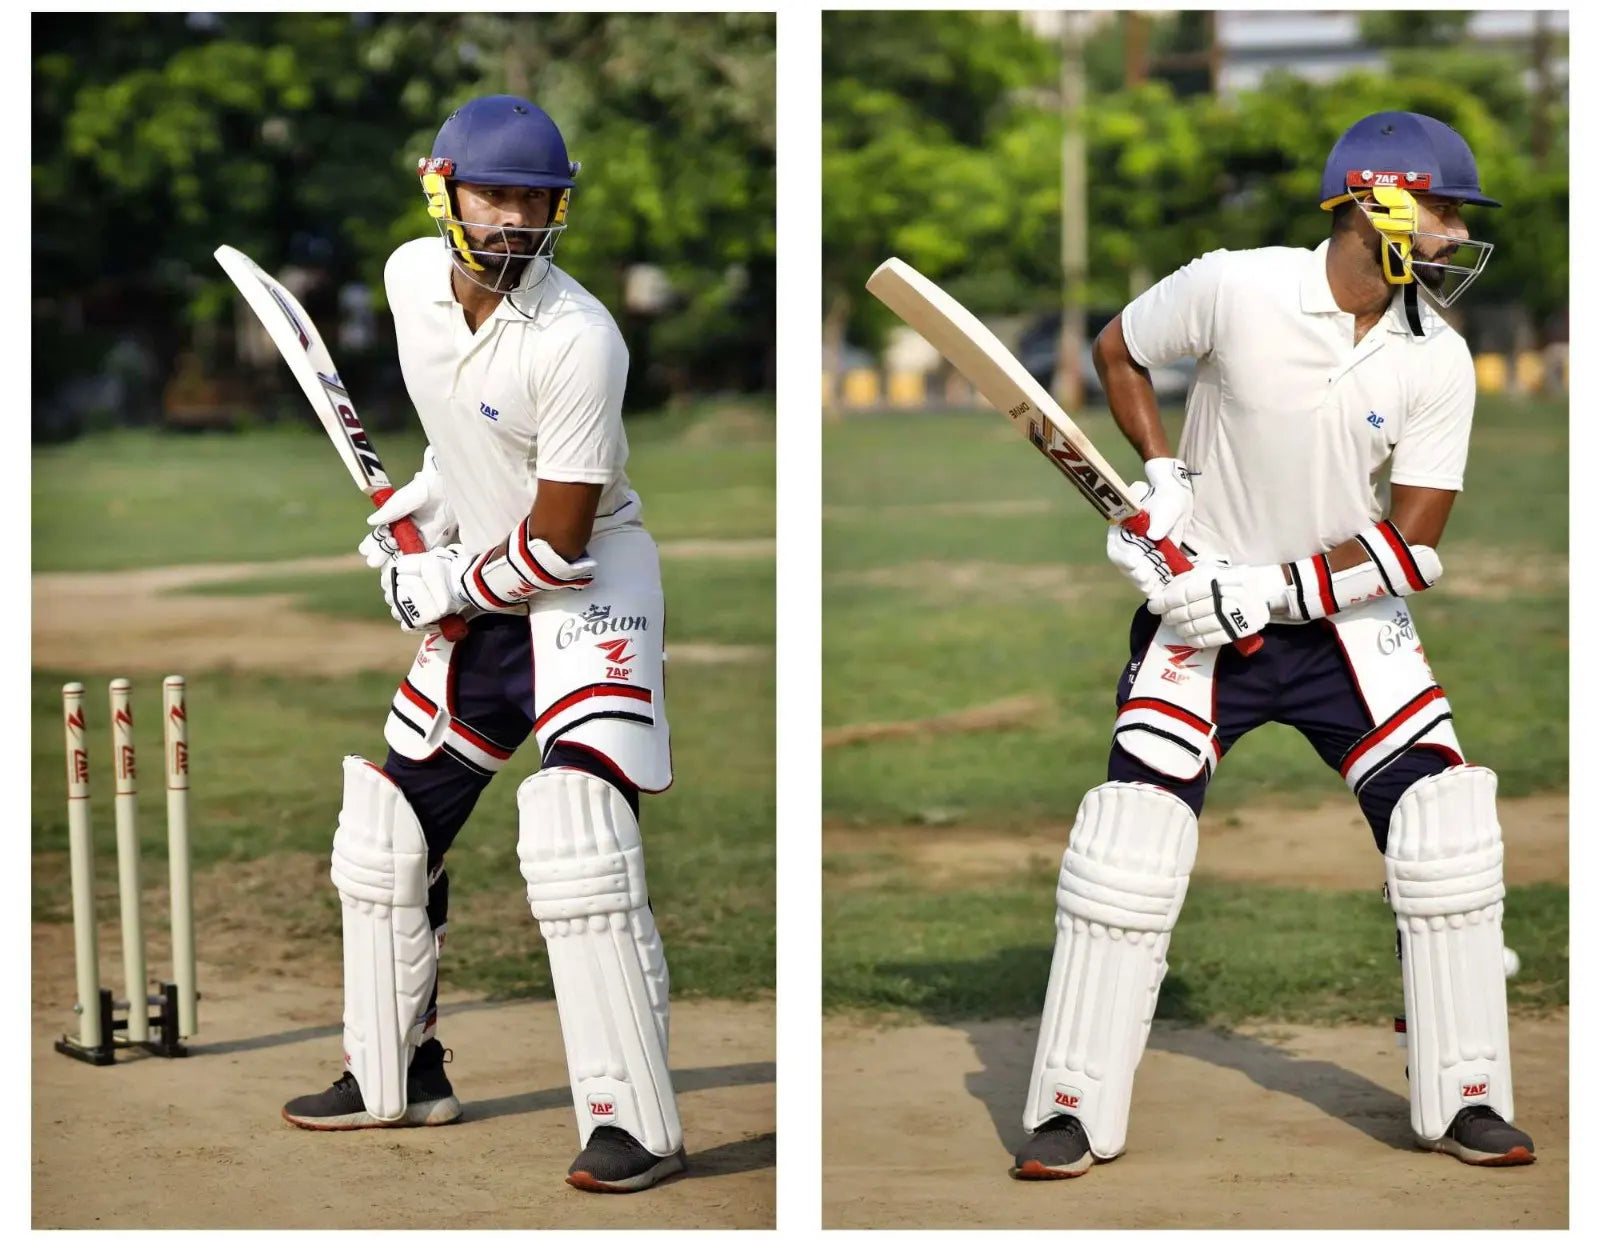 Playing on the Leg Side  Cricket Batting Basics 